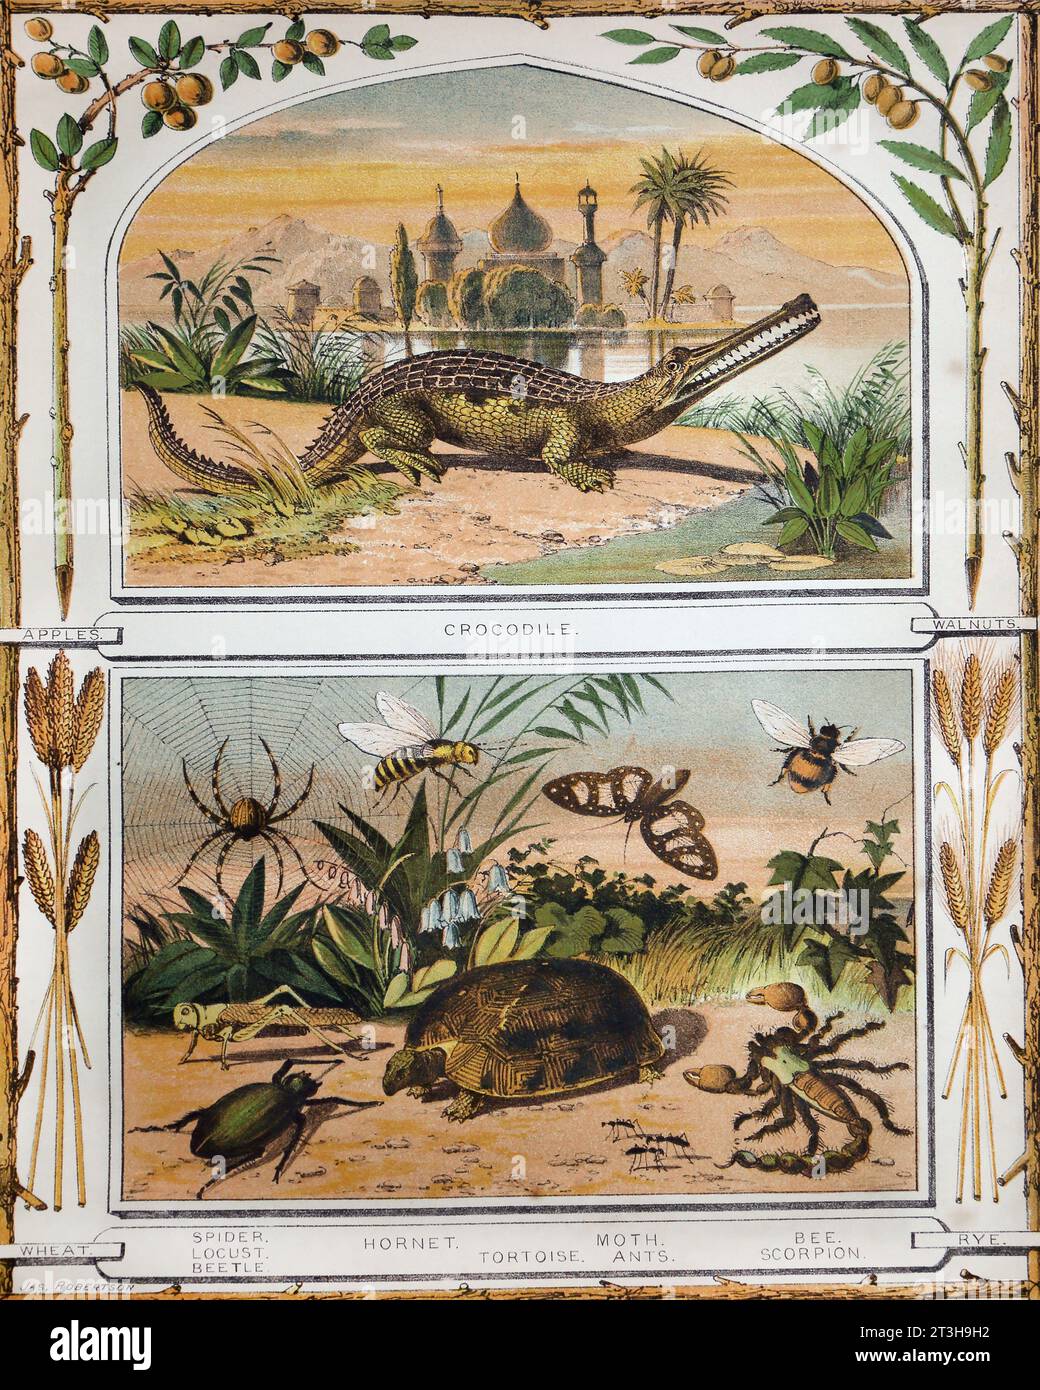 Bibel Naturgeschichtliche Illustration mit Insekten, Reptilien und Äpfeln, Walnüssen, Weizen und Roggen in der Bibel des 19. Jahrhunderts Stockfoto